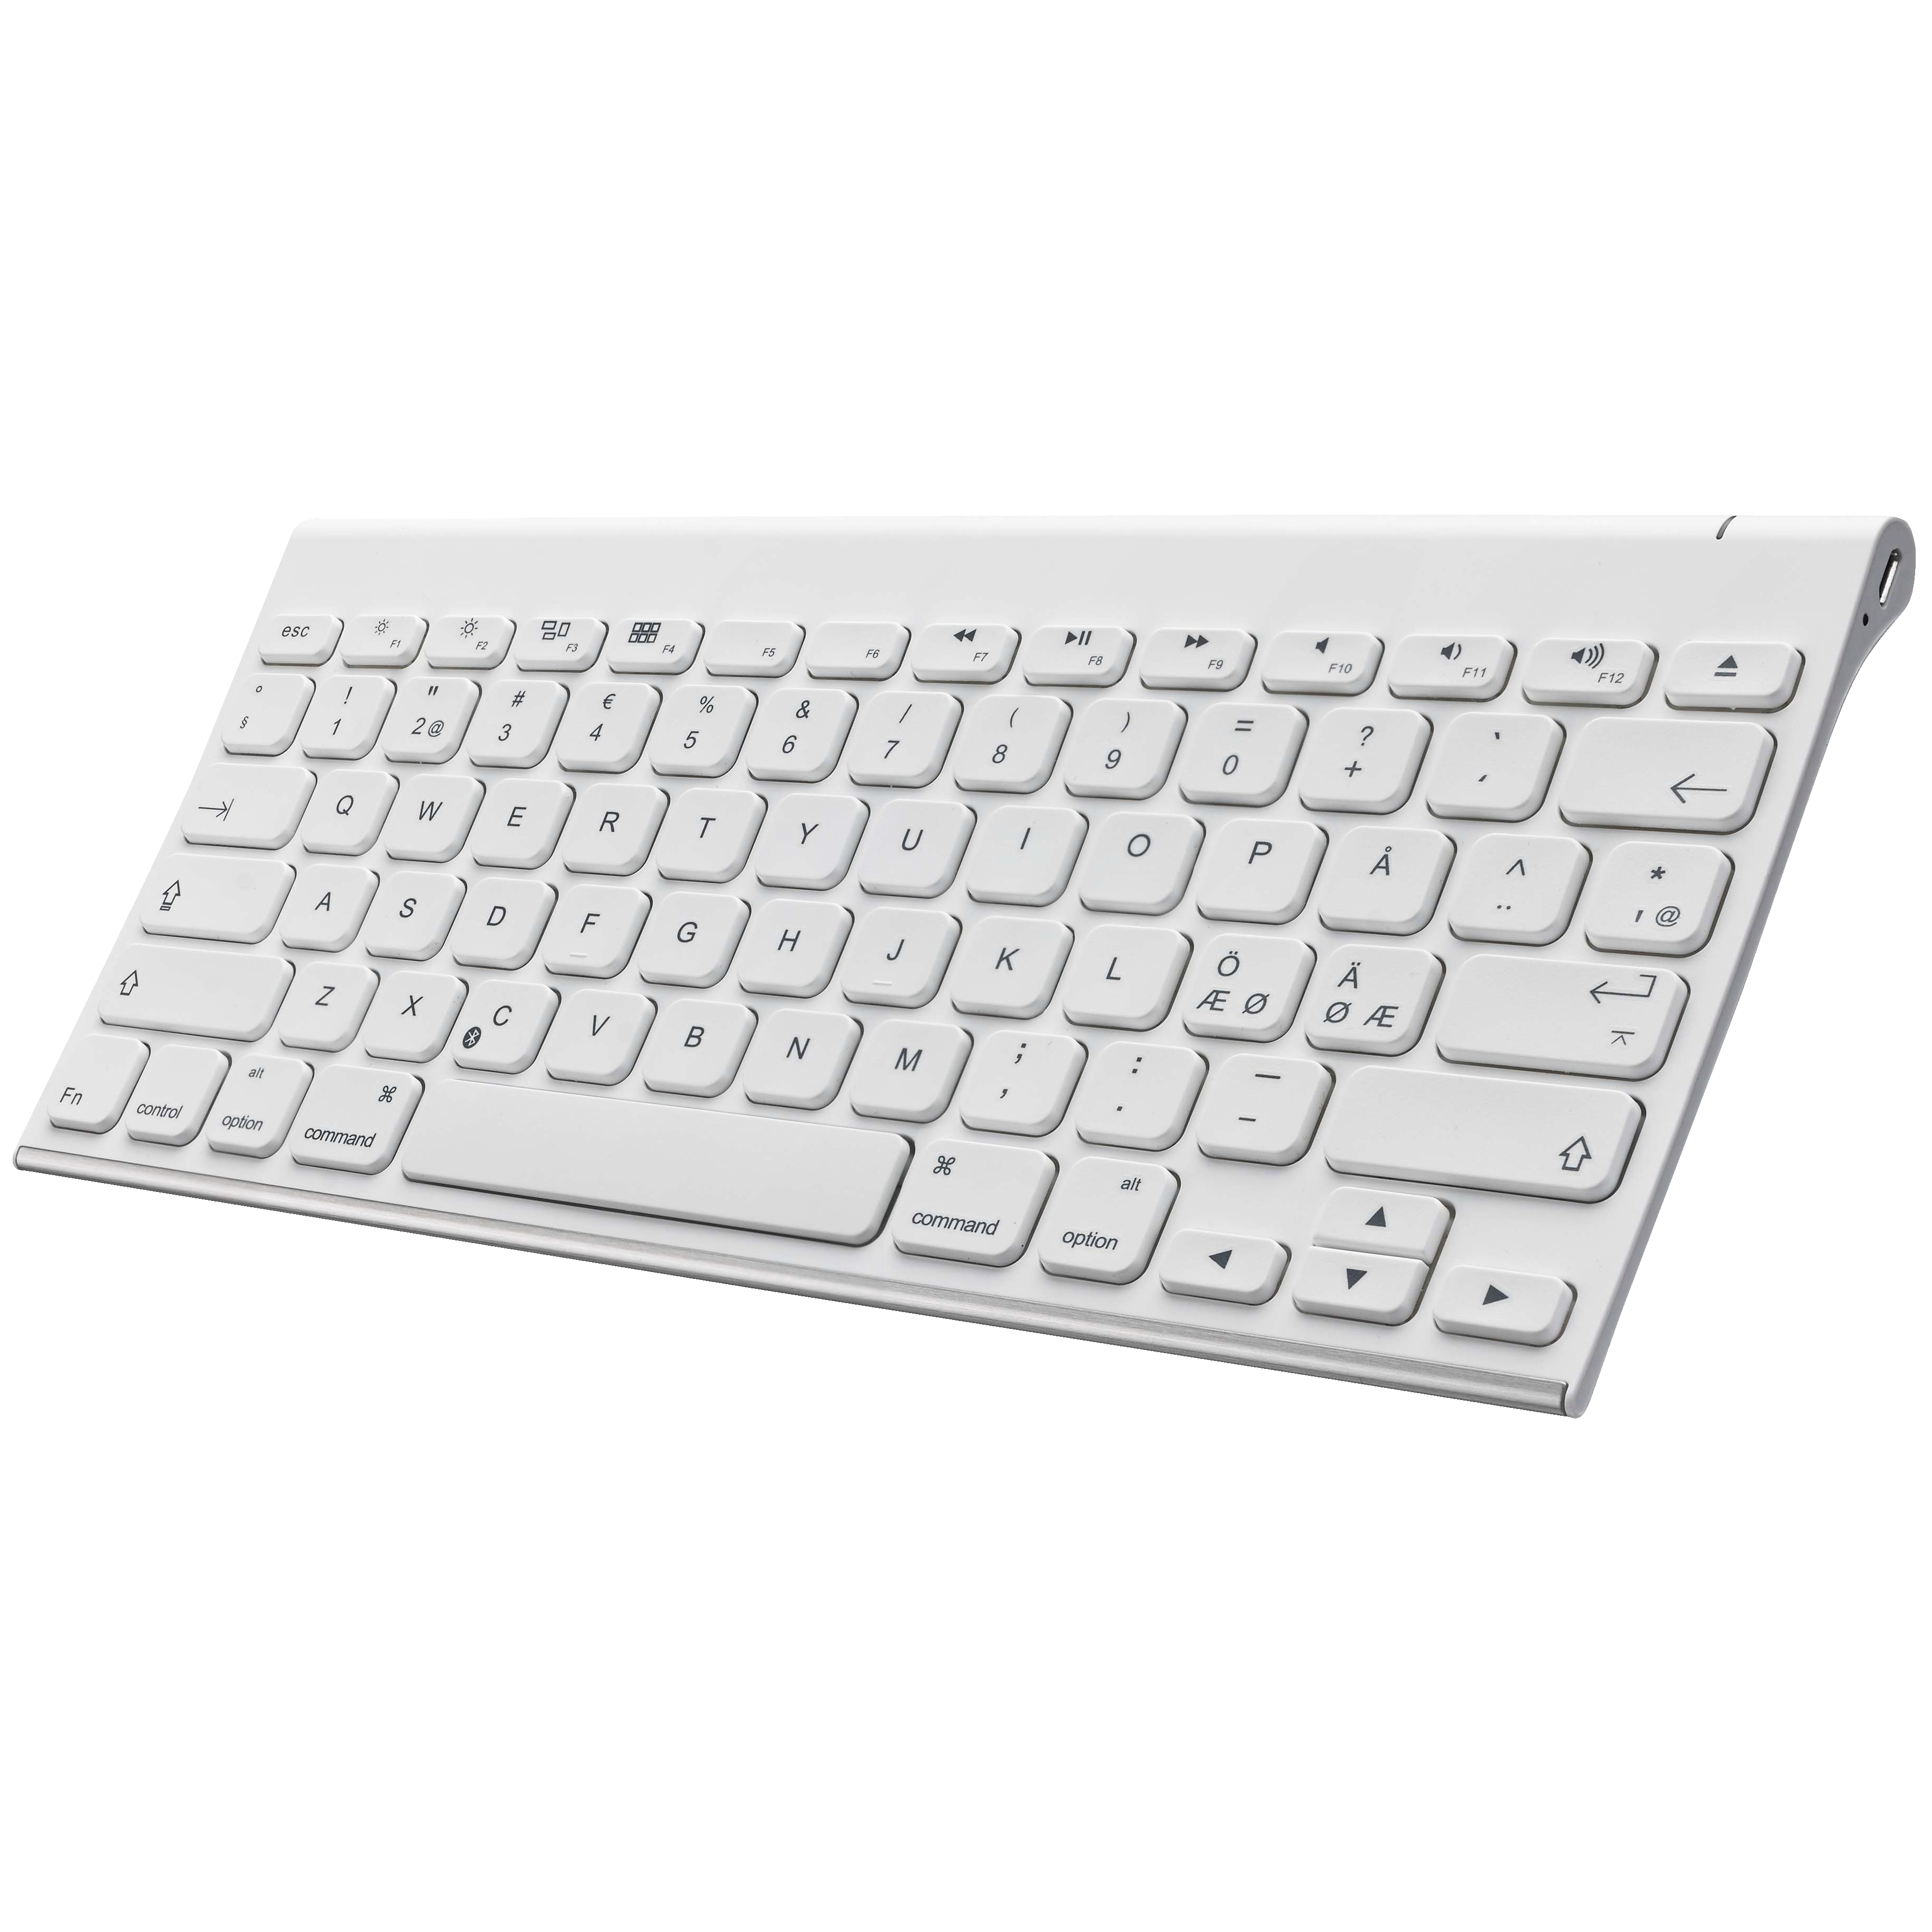 Sandstrøm kompakt Bluetooth tastatur - hvid - Mus og tastatur - Elgiganten